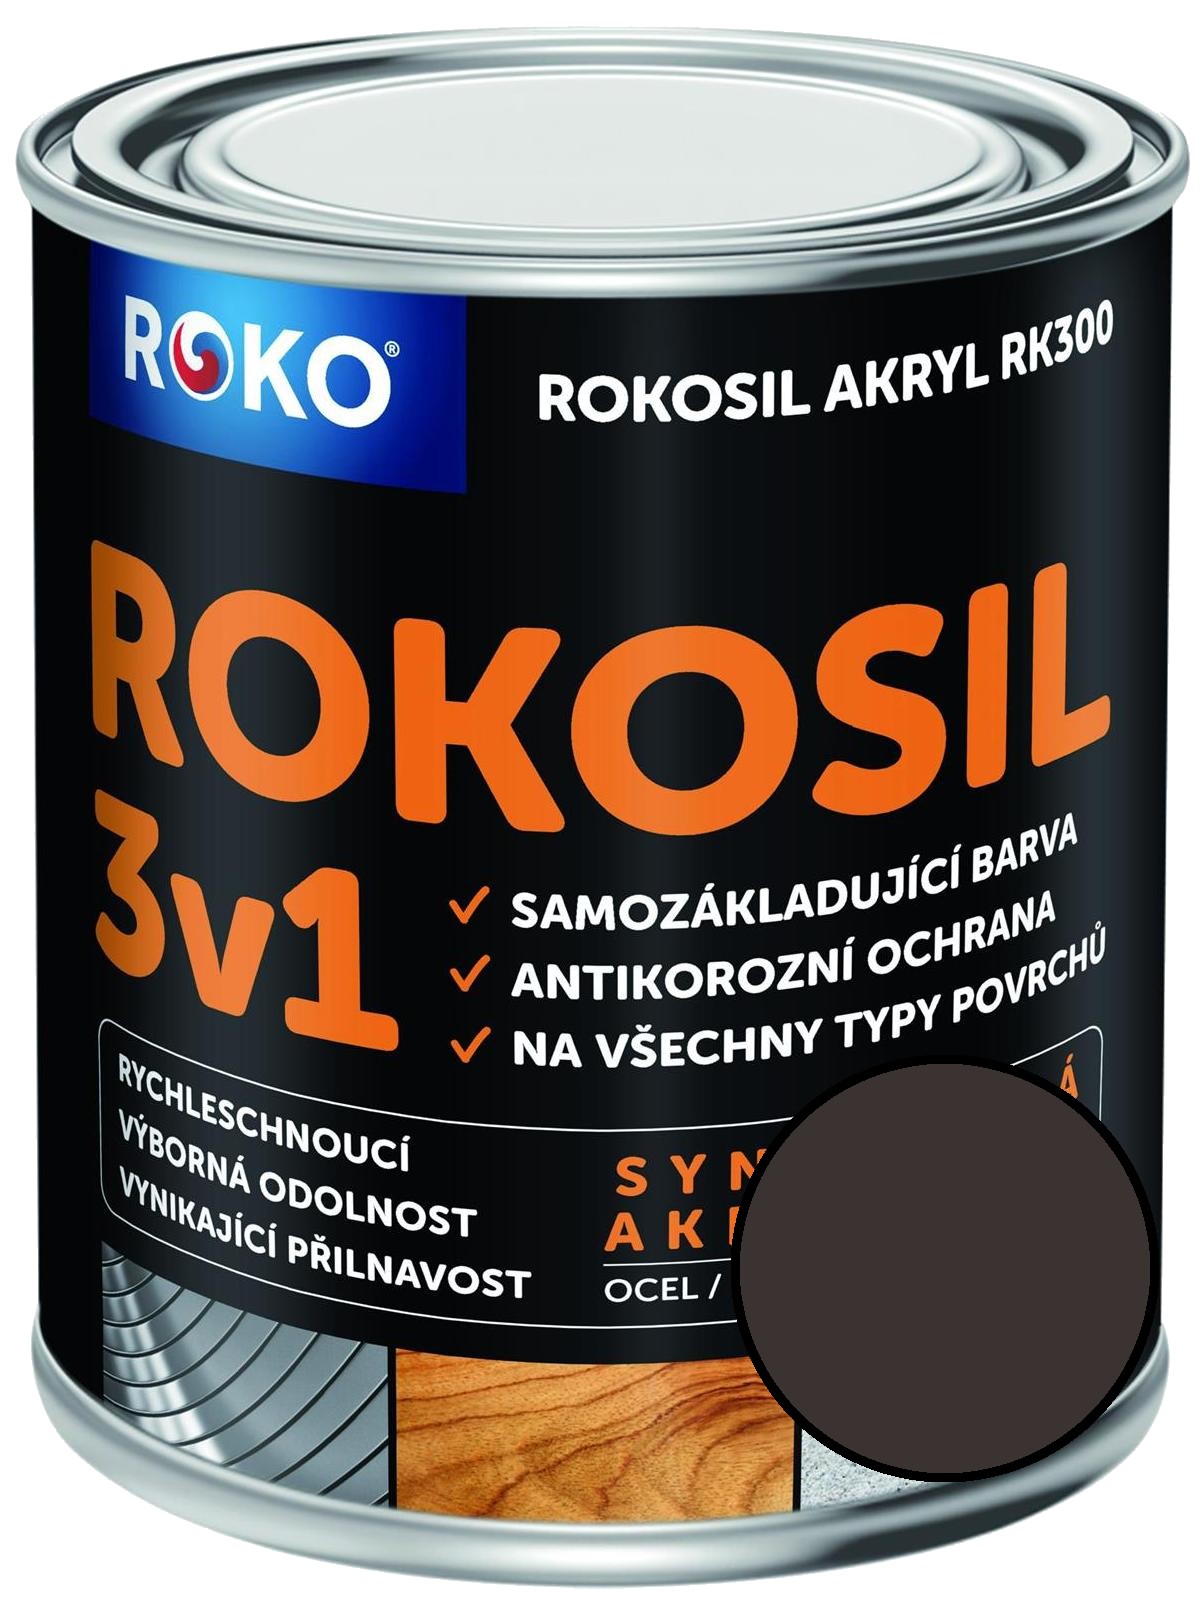 Barva samozákladující Rokosil akryl 3v1 RK 300 hnědá kaš. 0